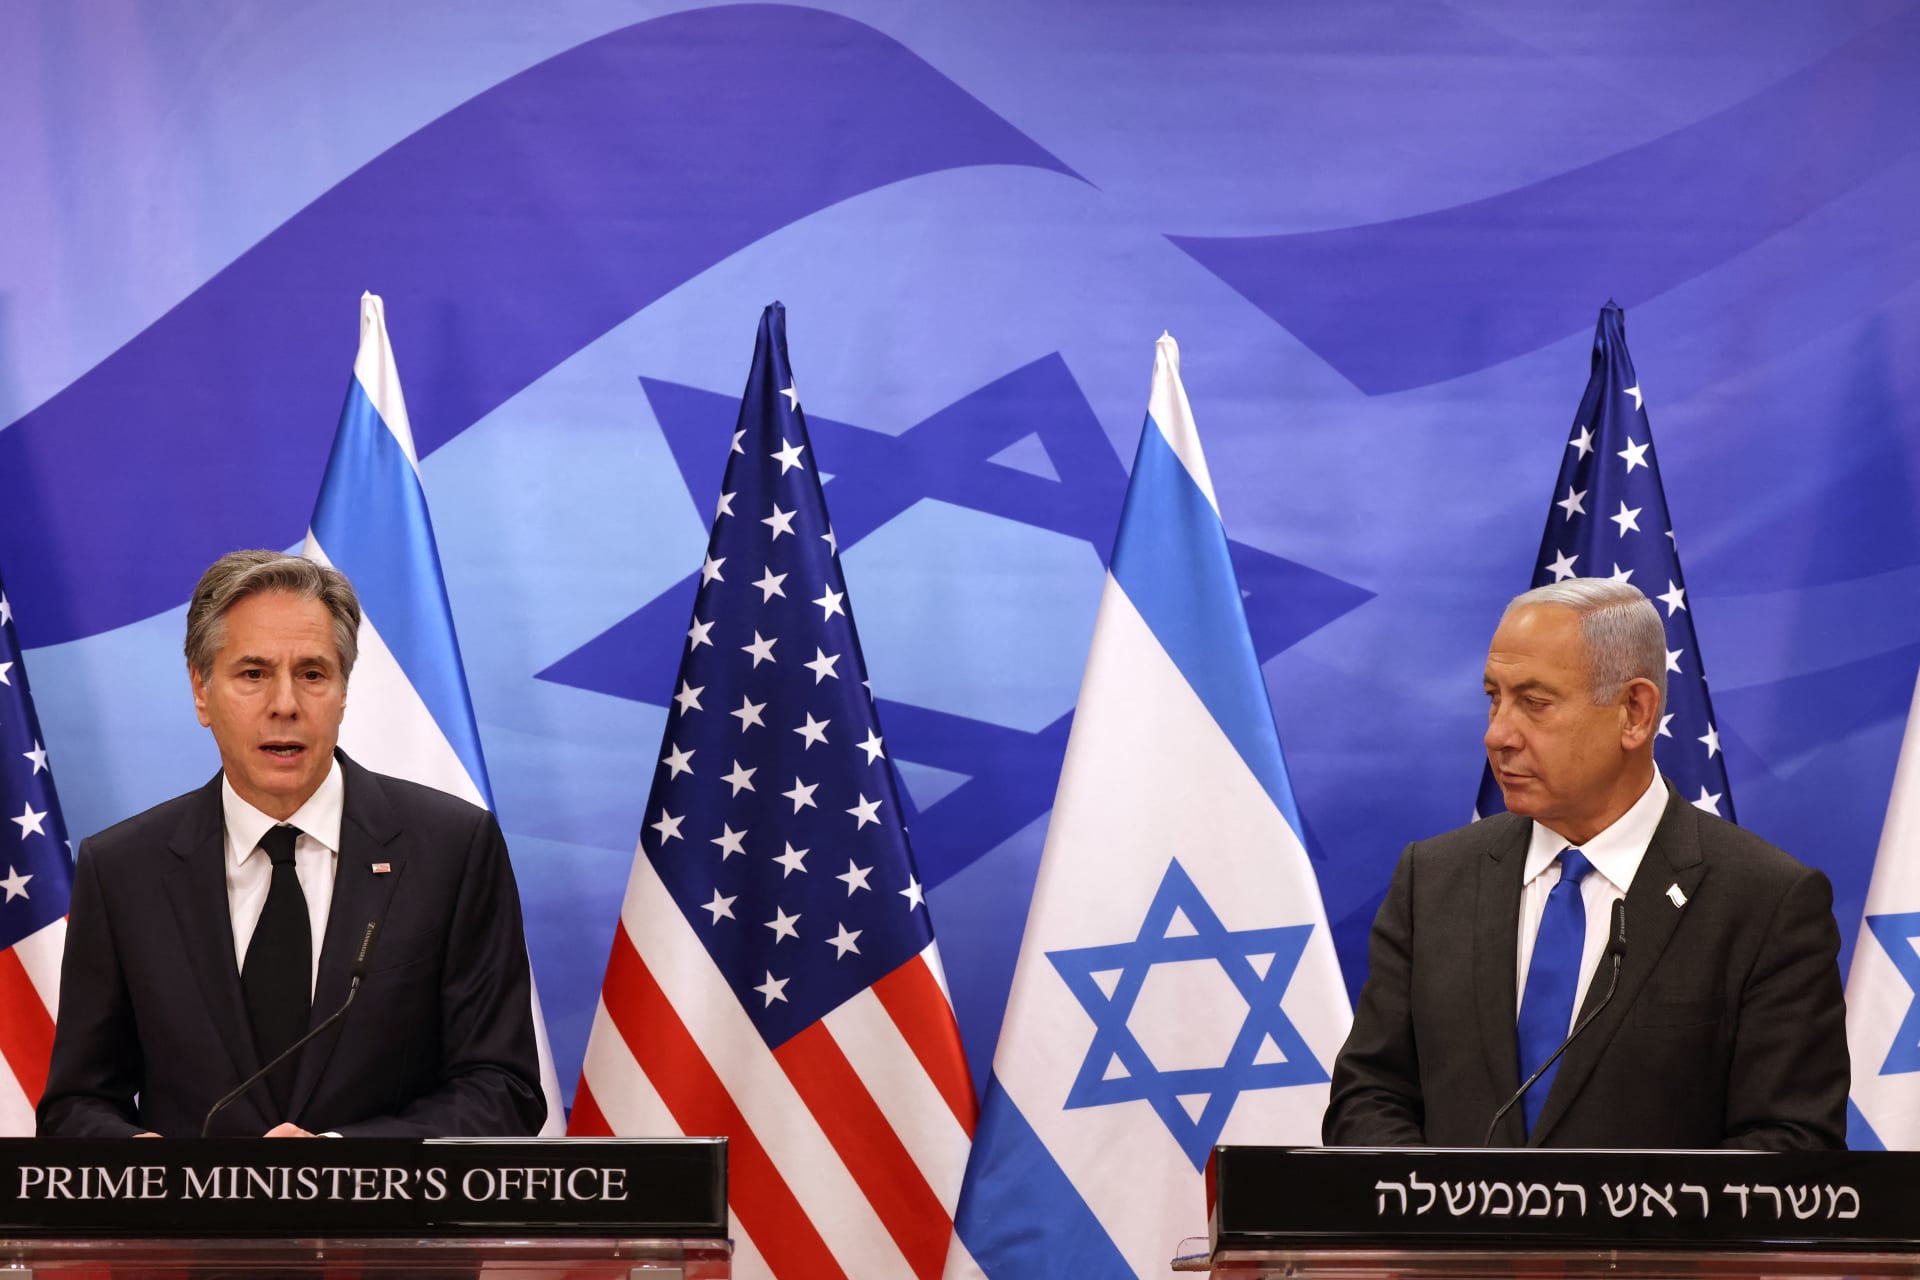 واشنطن وإسرائيل تلعبان ورقة “التطبيع” لوقف العدوان على غزة!